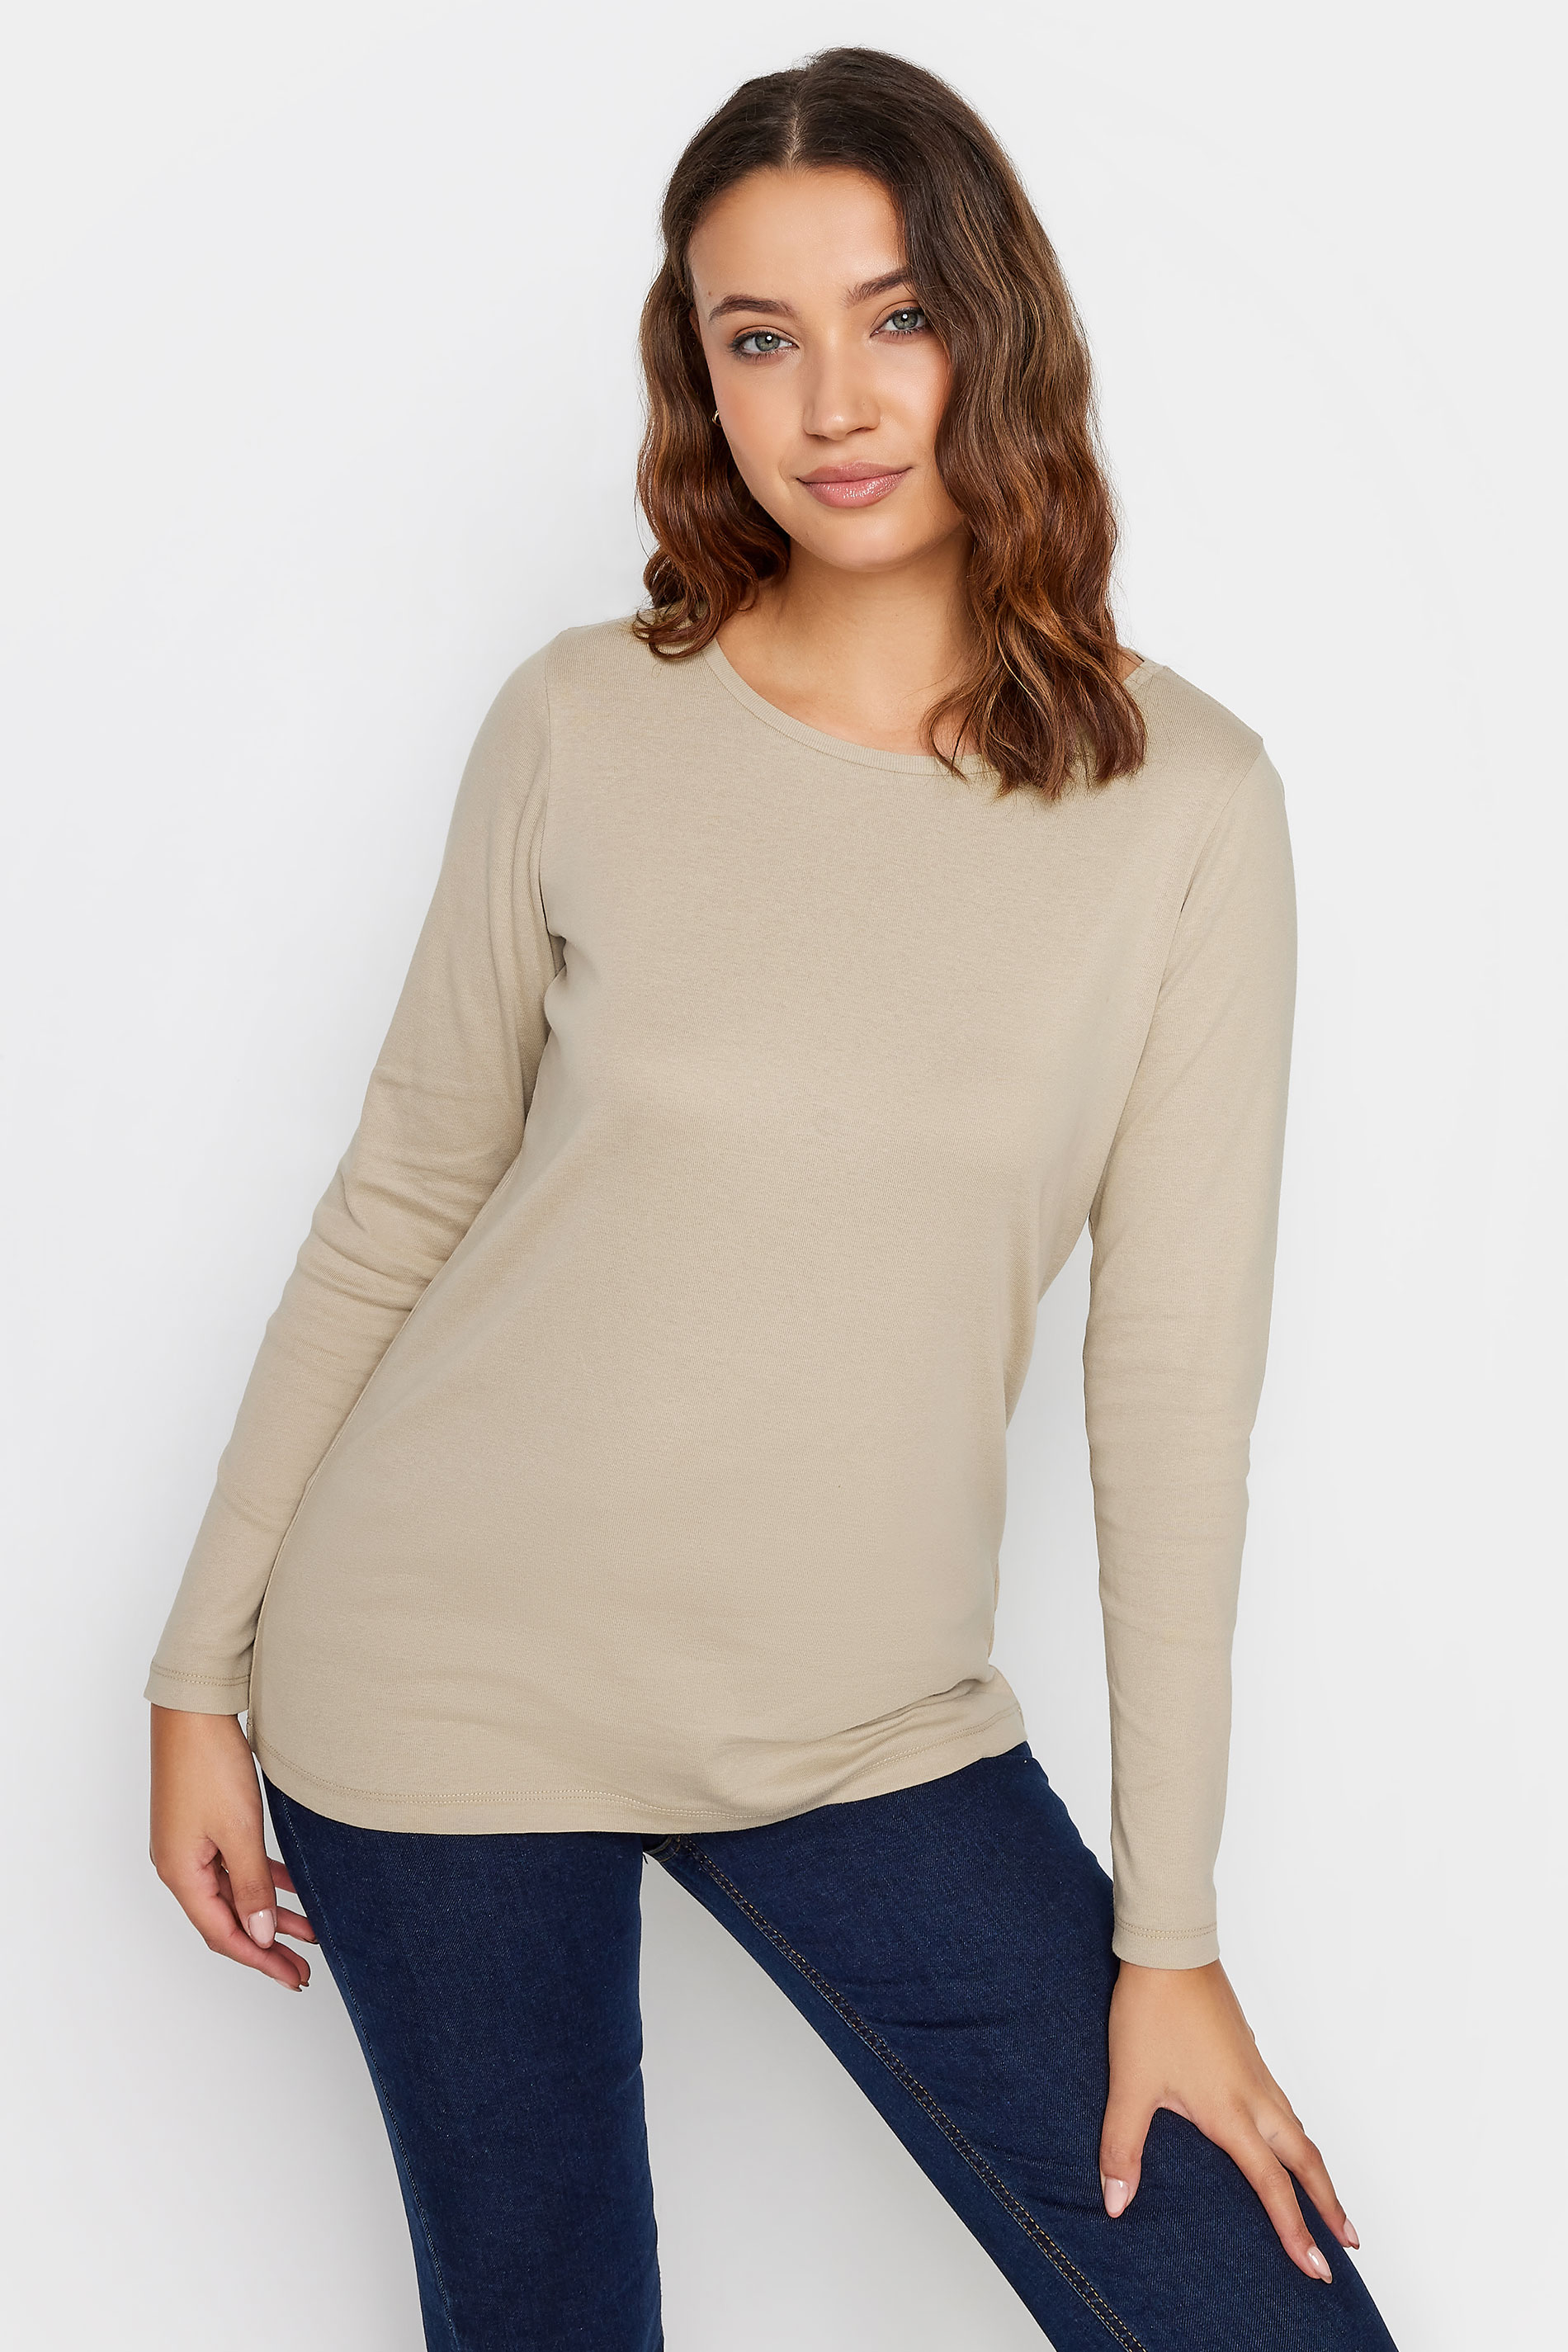 LTS Tall Beige Brown Long Sleeve Cotton T-Shirt | Long Tall Sally  1